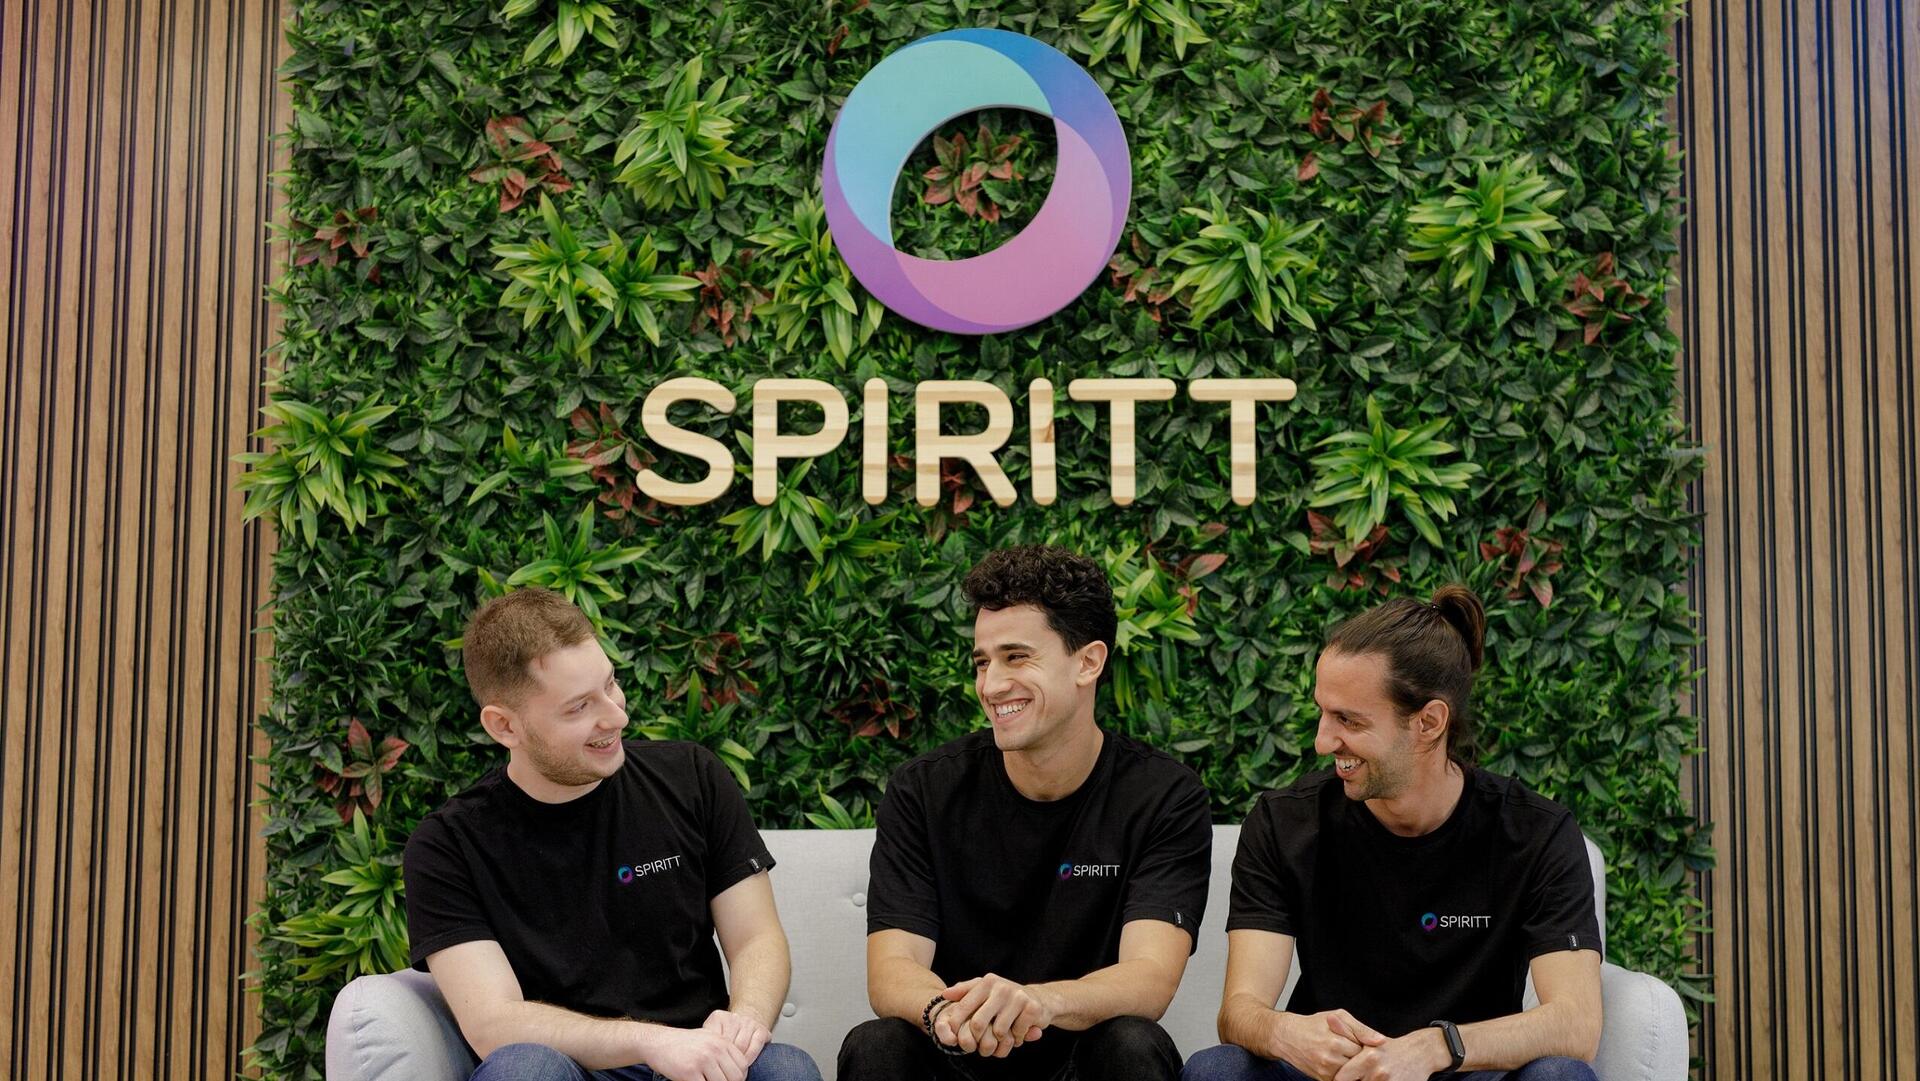 Spiritt co-founders